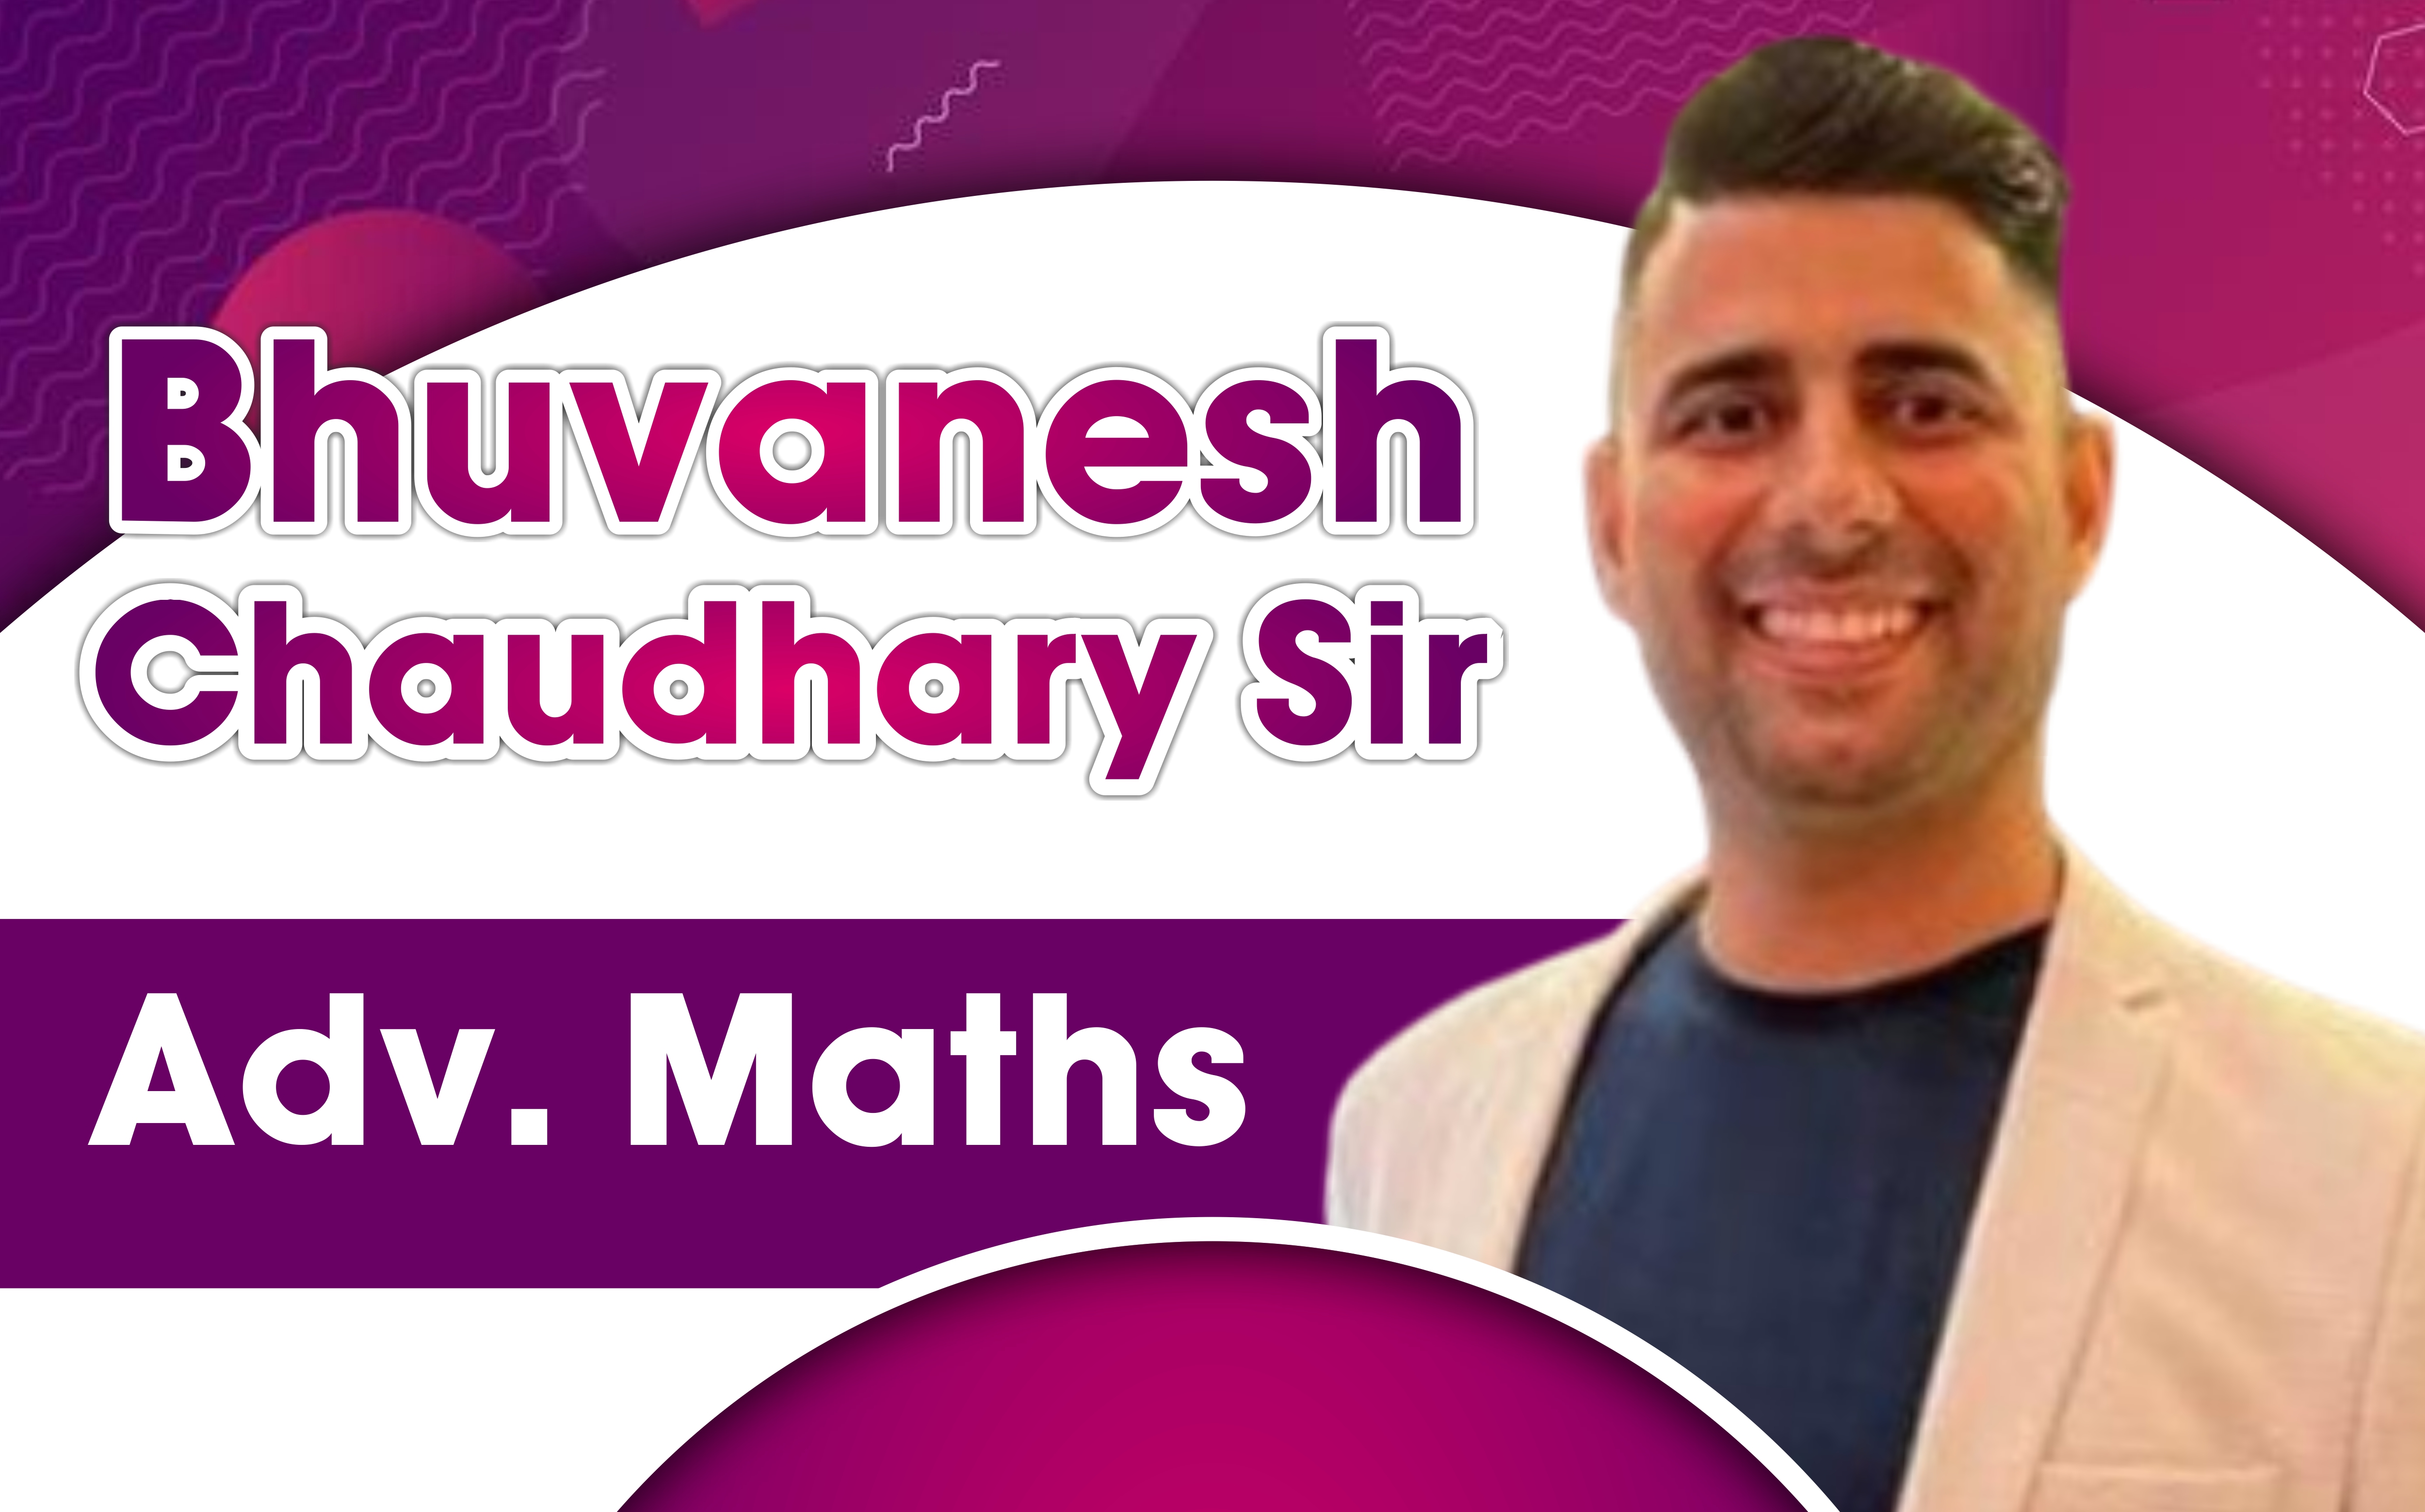 Prof. Bhuvanesh Chaudhary